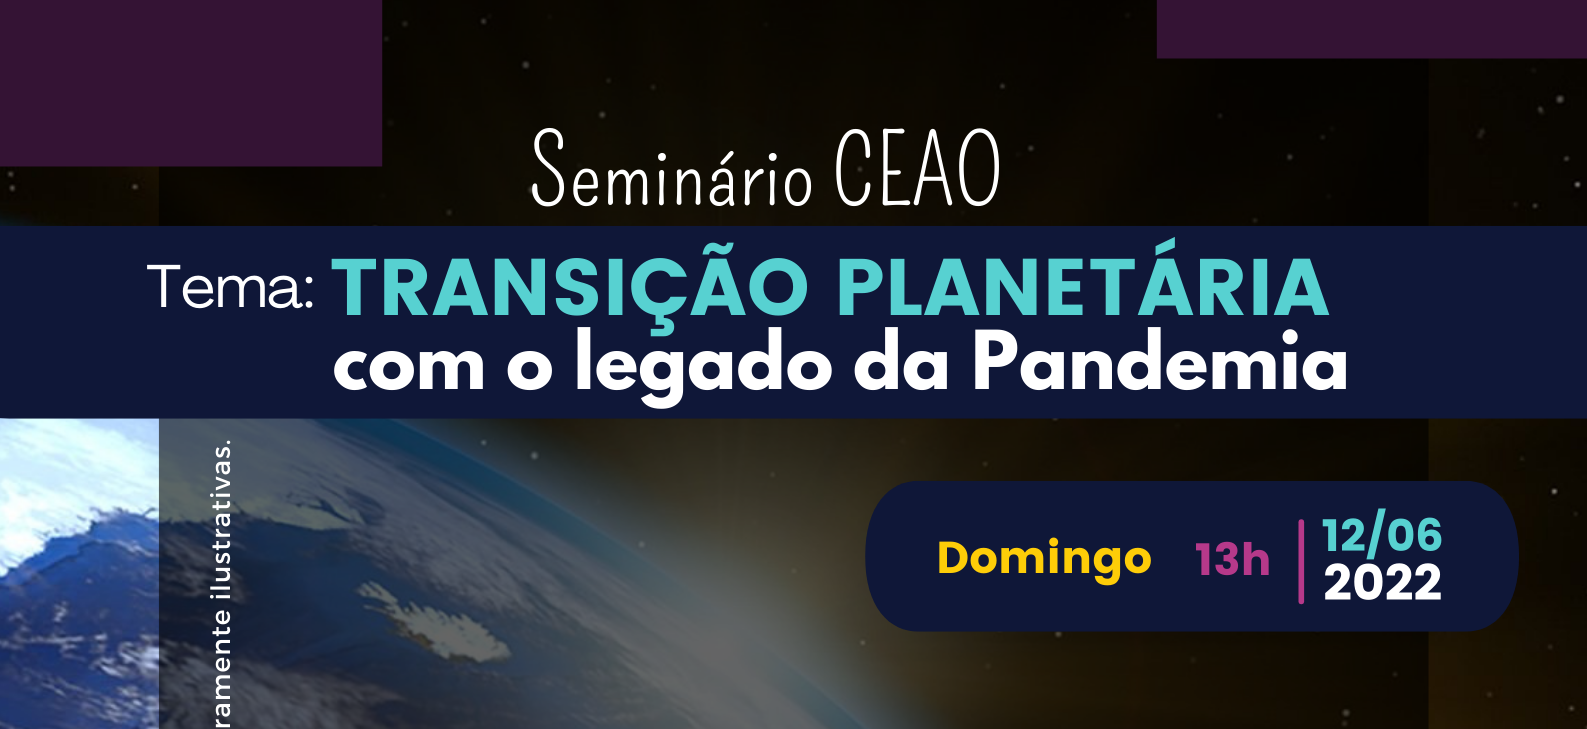 3. Seminário CEAO – Tema: Transição Planetária com o legado da Pandemia – 12-06-2022 às 13h.